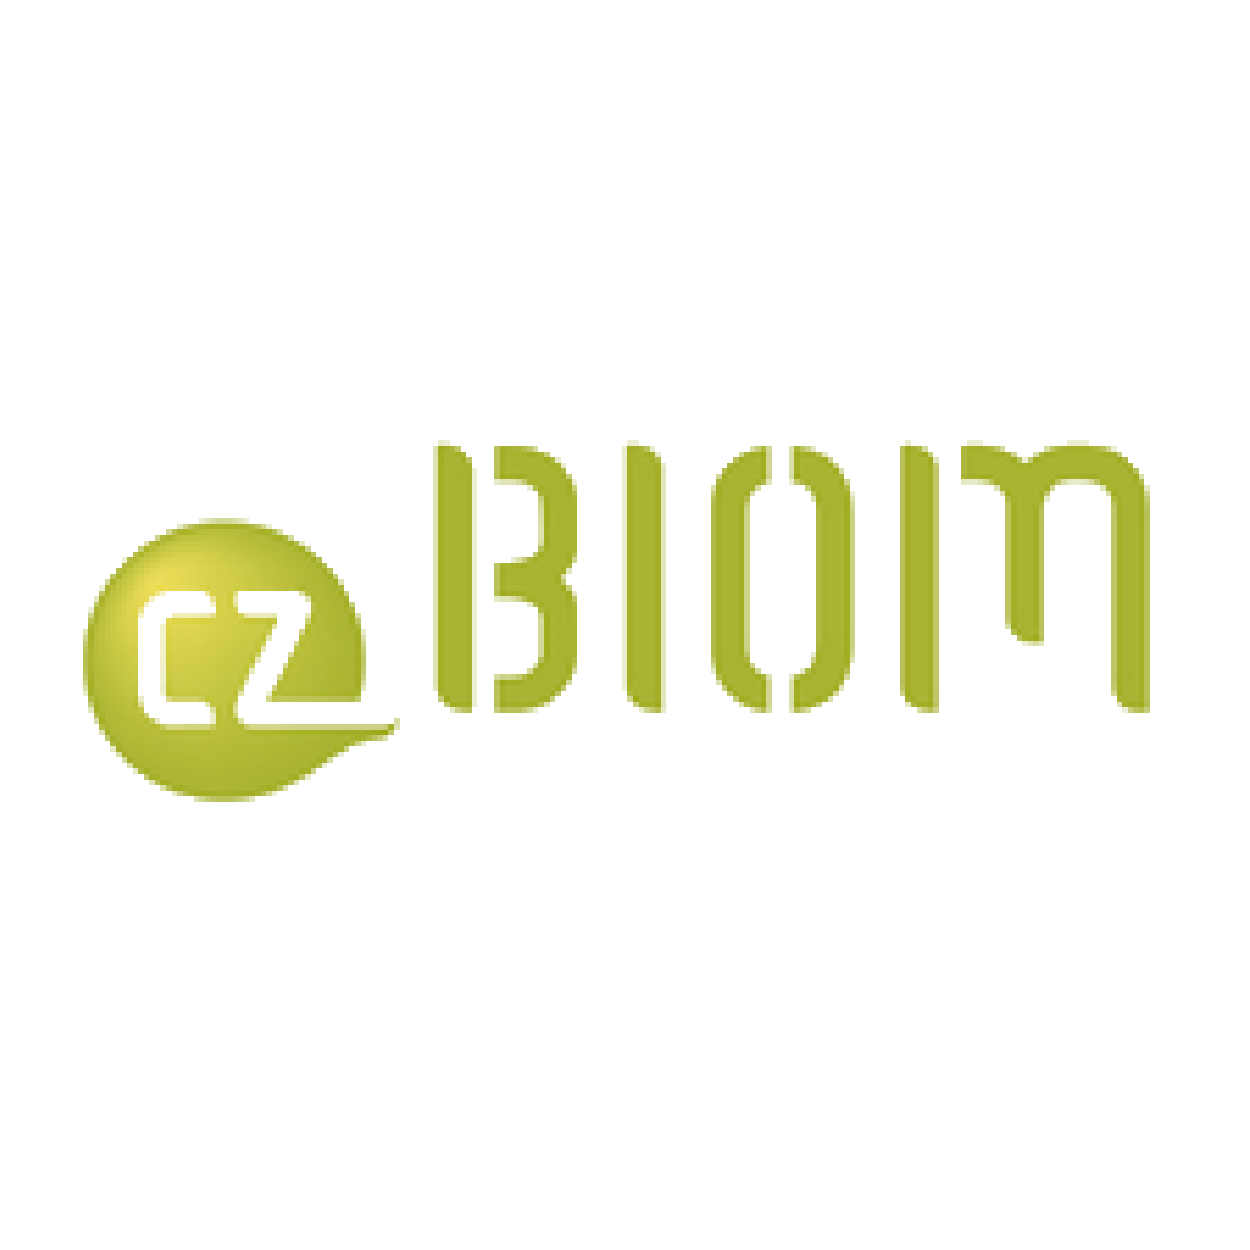 Czech Biomass Association (CZ-BIOM)